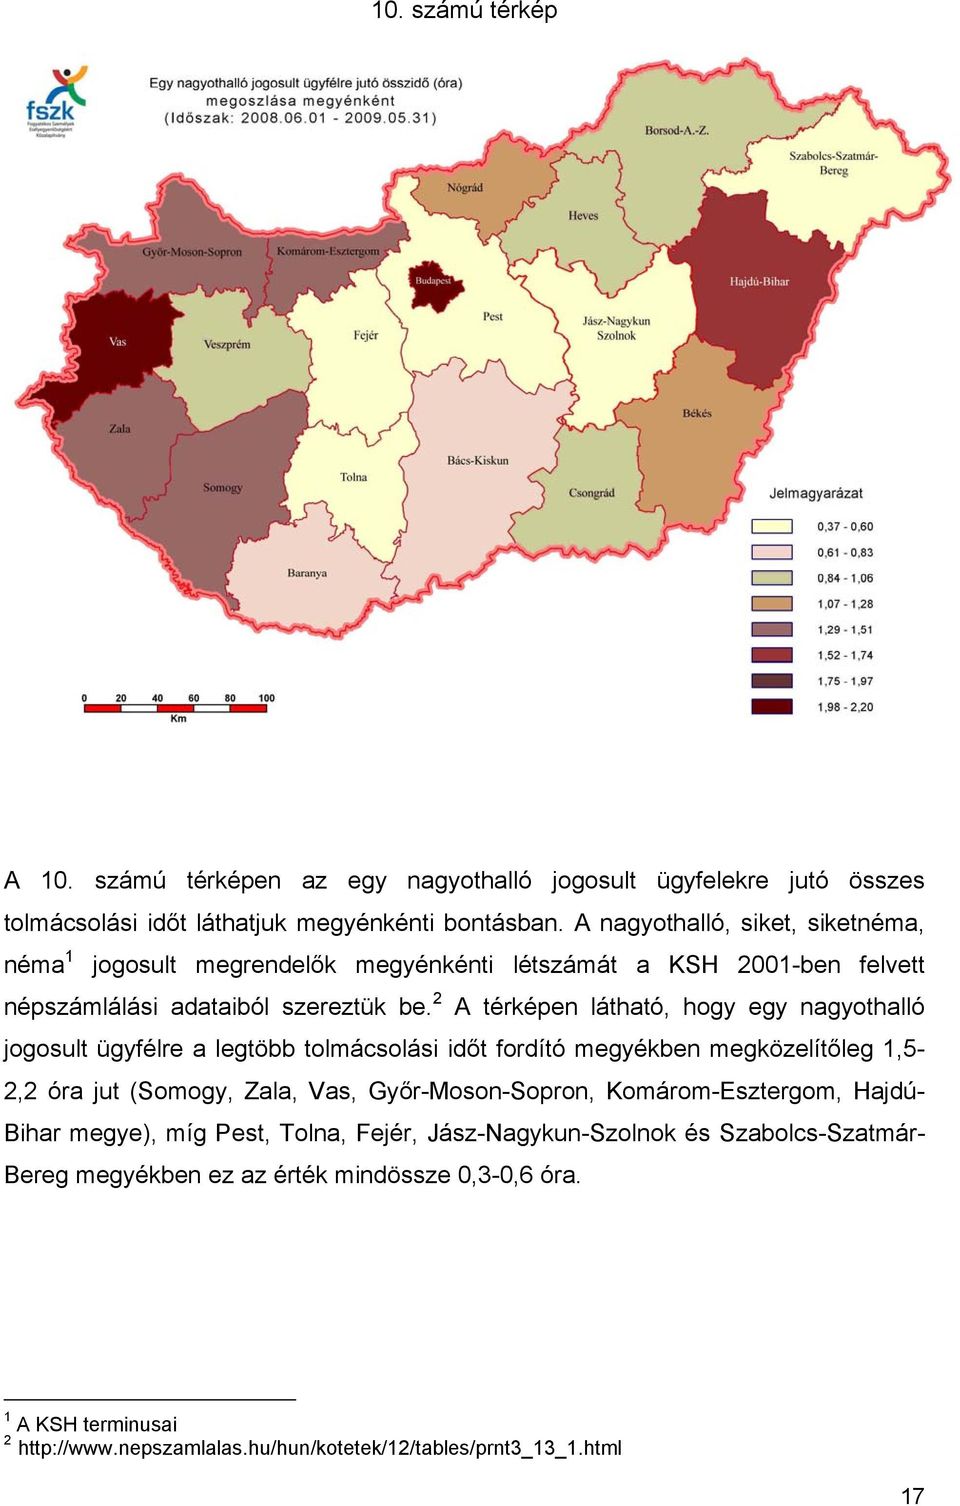 2 A térképen látható, hogy egy nagyothalló jogosult ügyfélre a legtöbb tolmácsolási időt fordító megyékben megközelítőleg 1,5-2,2 óra jut (Somogy, Zala, Vas, Győr-Moson-Sopron,